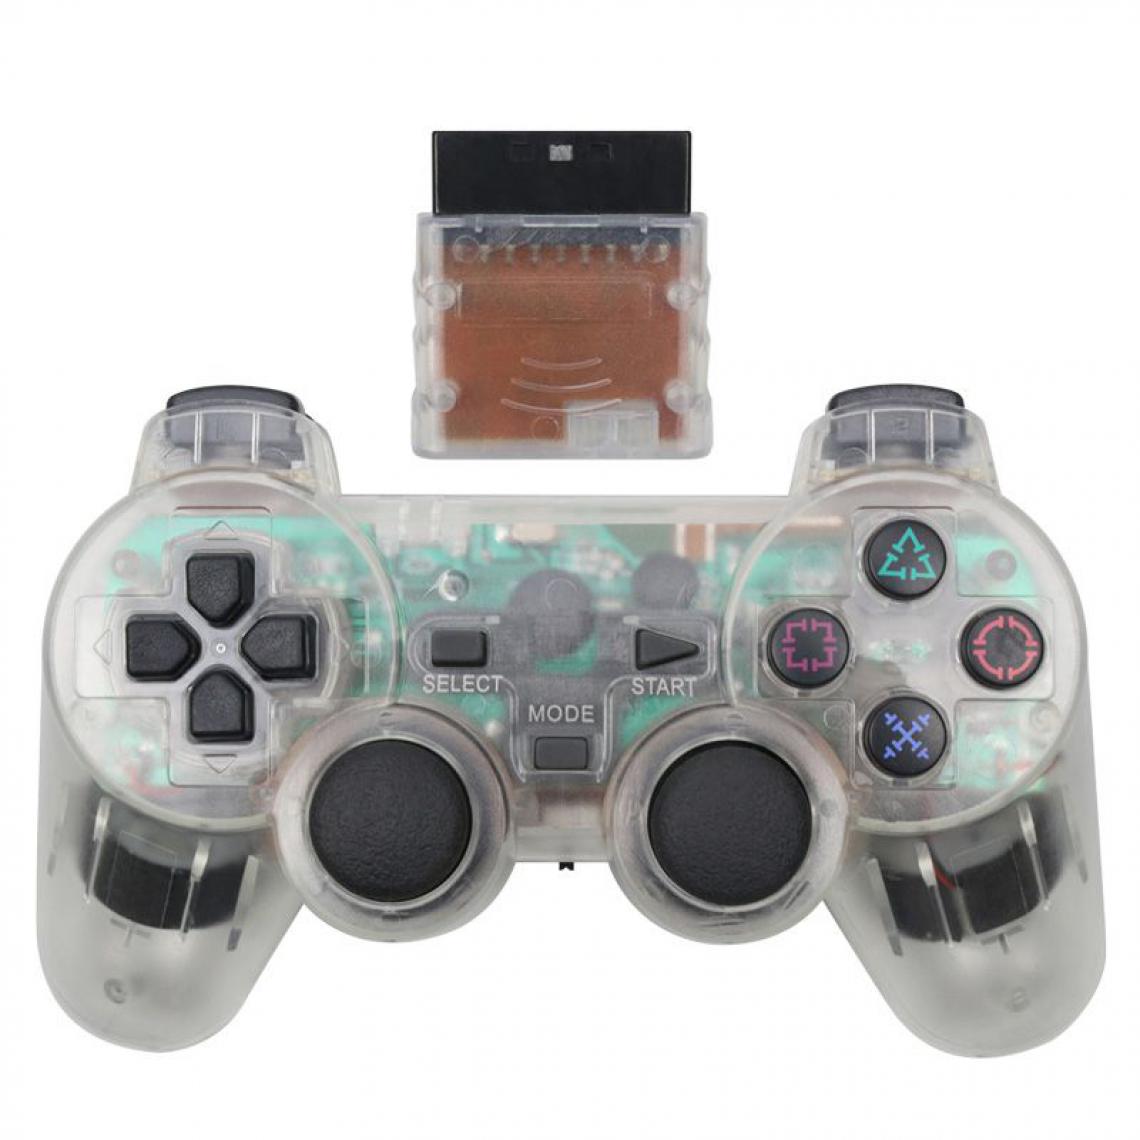 Generic - Manette de jeu sans fil , Joystick, Double Vibration, antichoc  et contrôleur USB pour Console Playstation 2 16 * 9.5 cm - Blanc  - Joystick